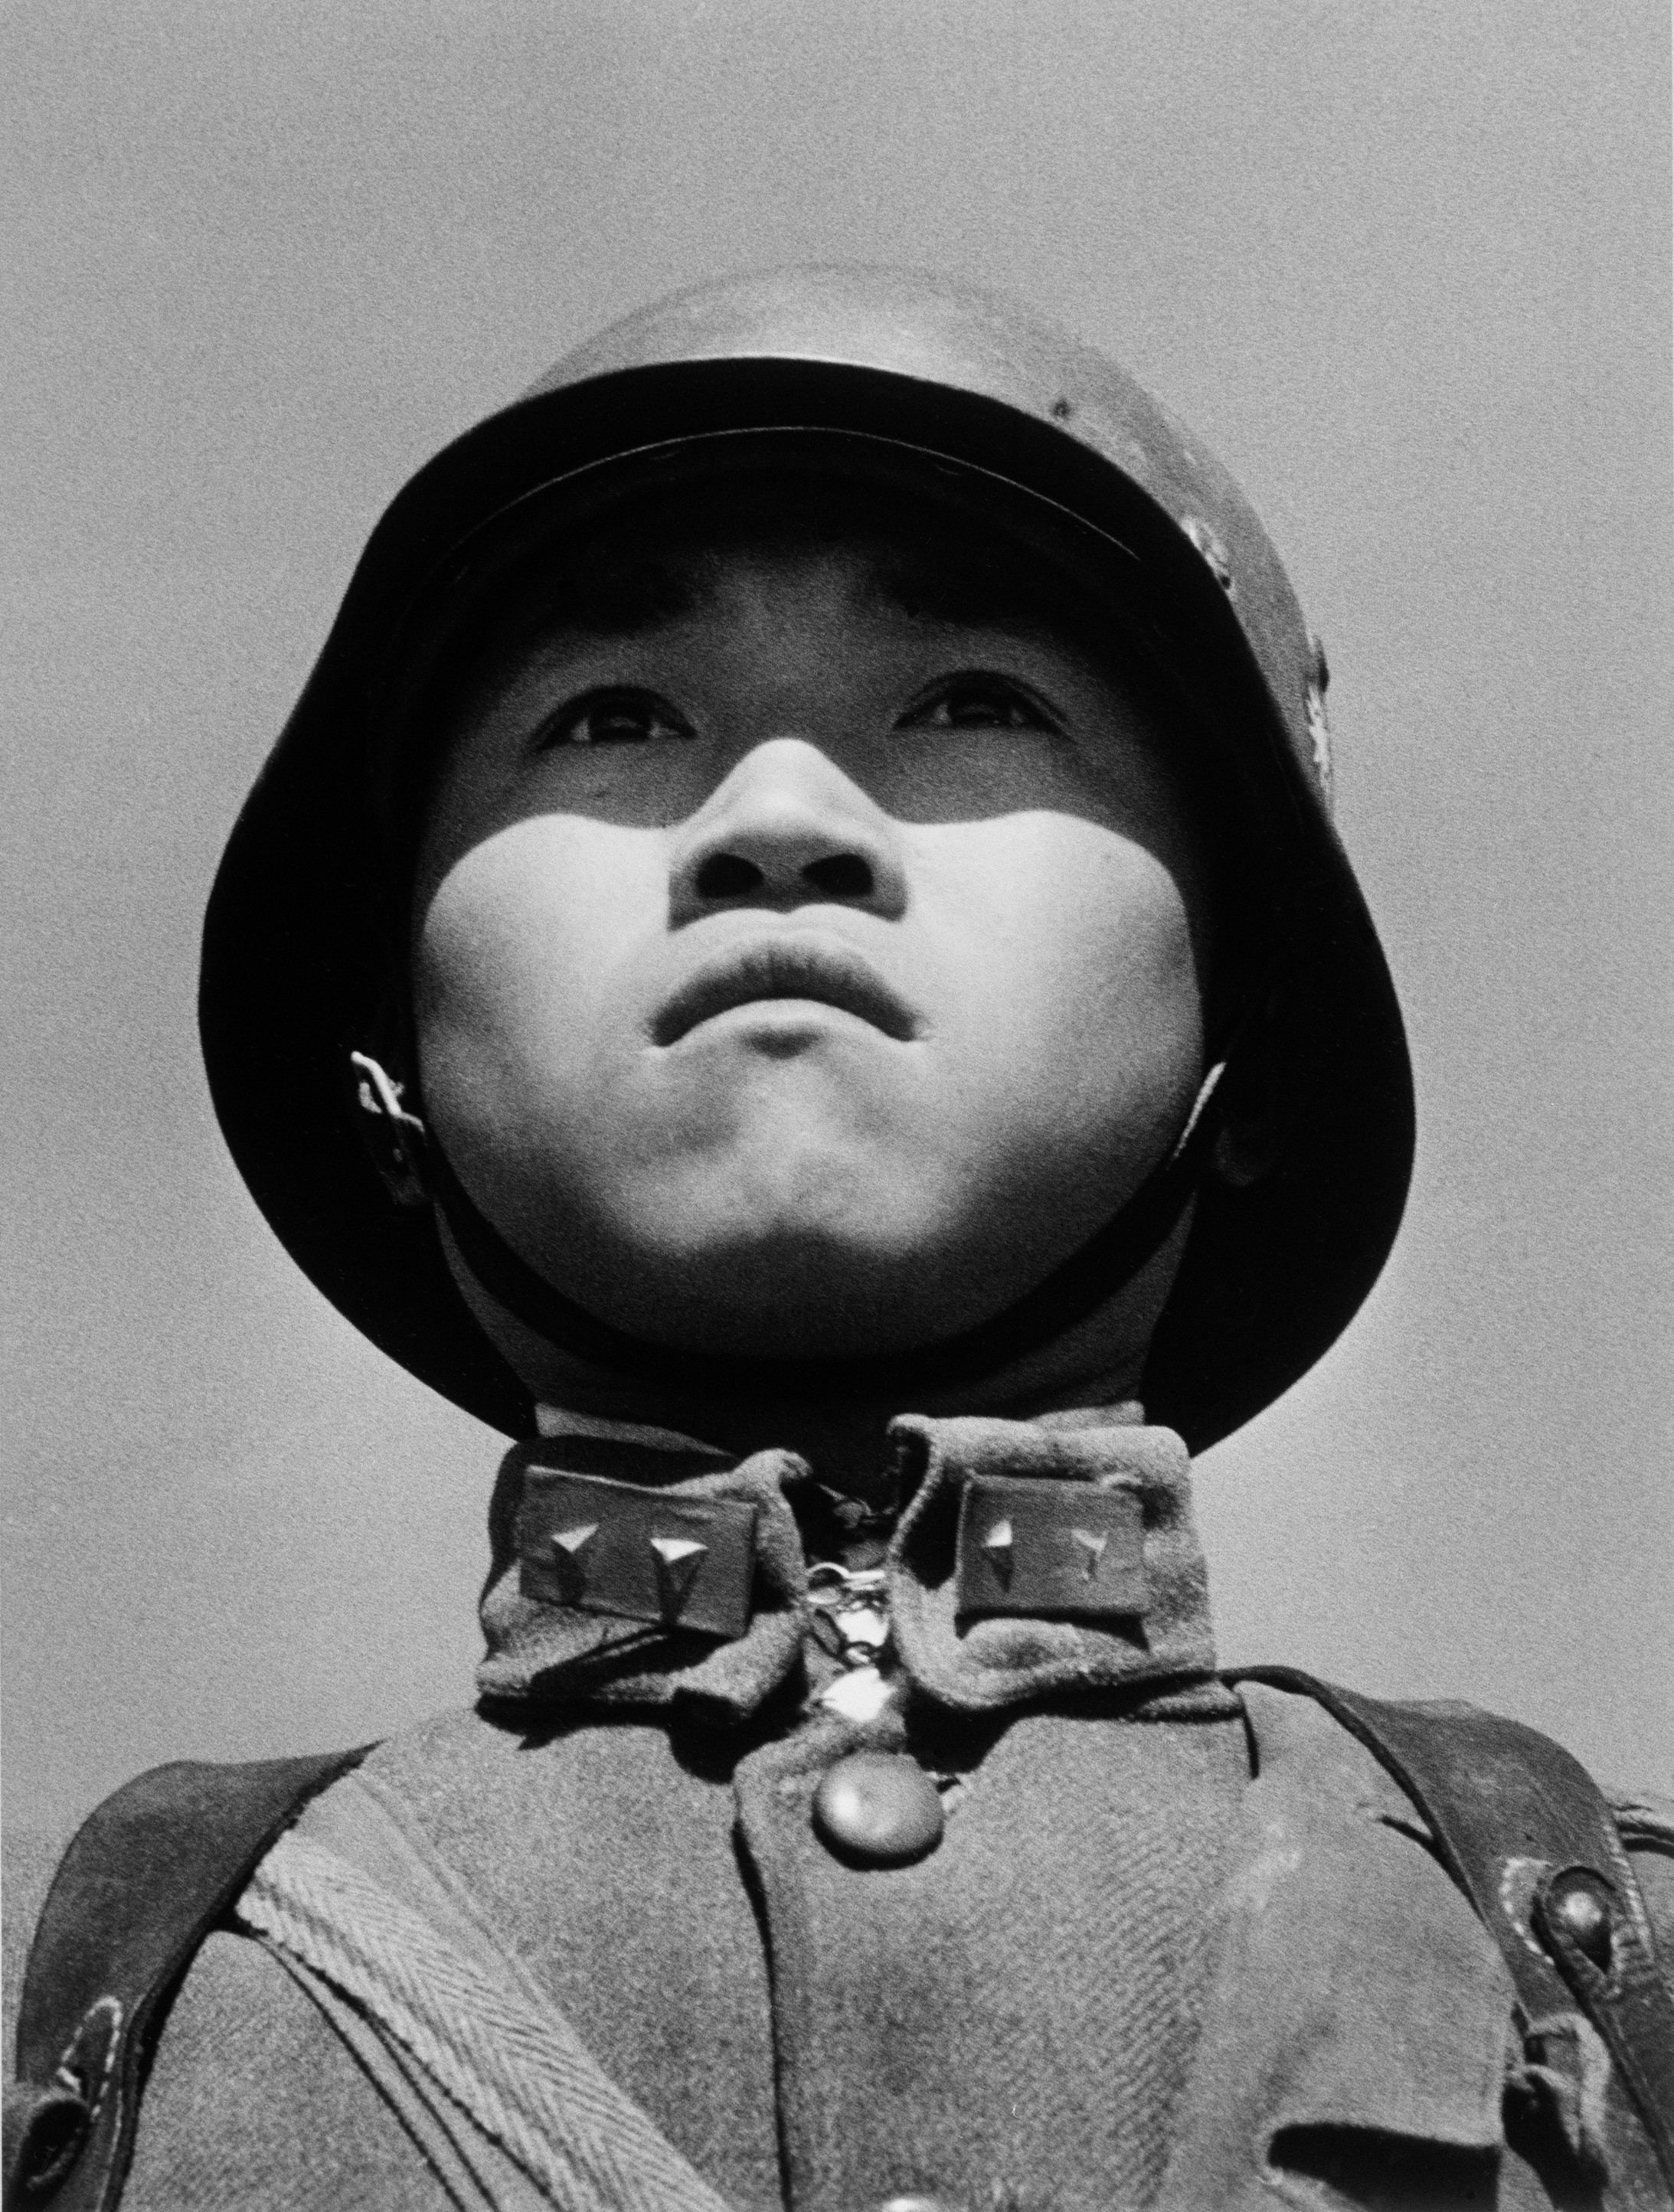 Ein minderjähriger Soldat, fotografiert von Robert Capa in Hankou im März 1938. © International Center of Photography/Magnum Photos / courtesy Schirmer/Mosel 